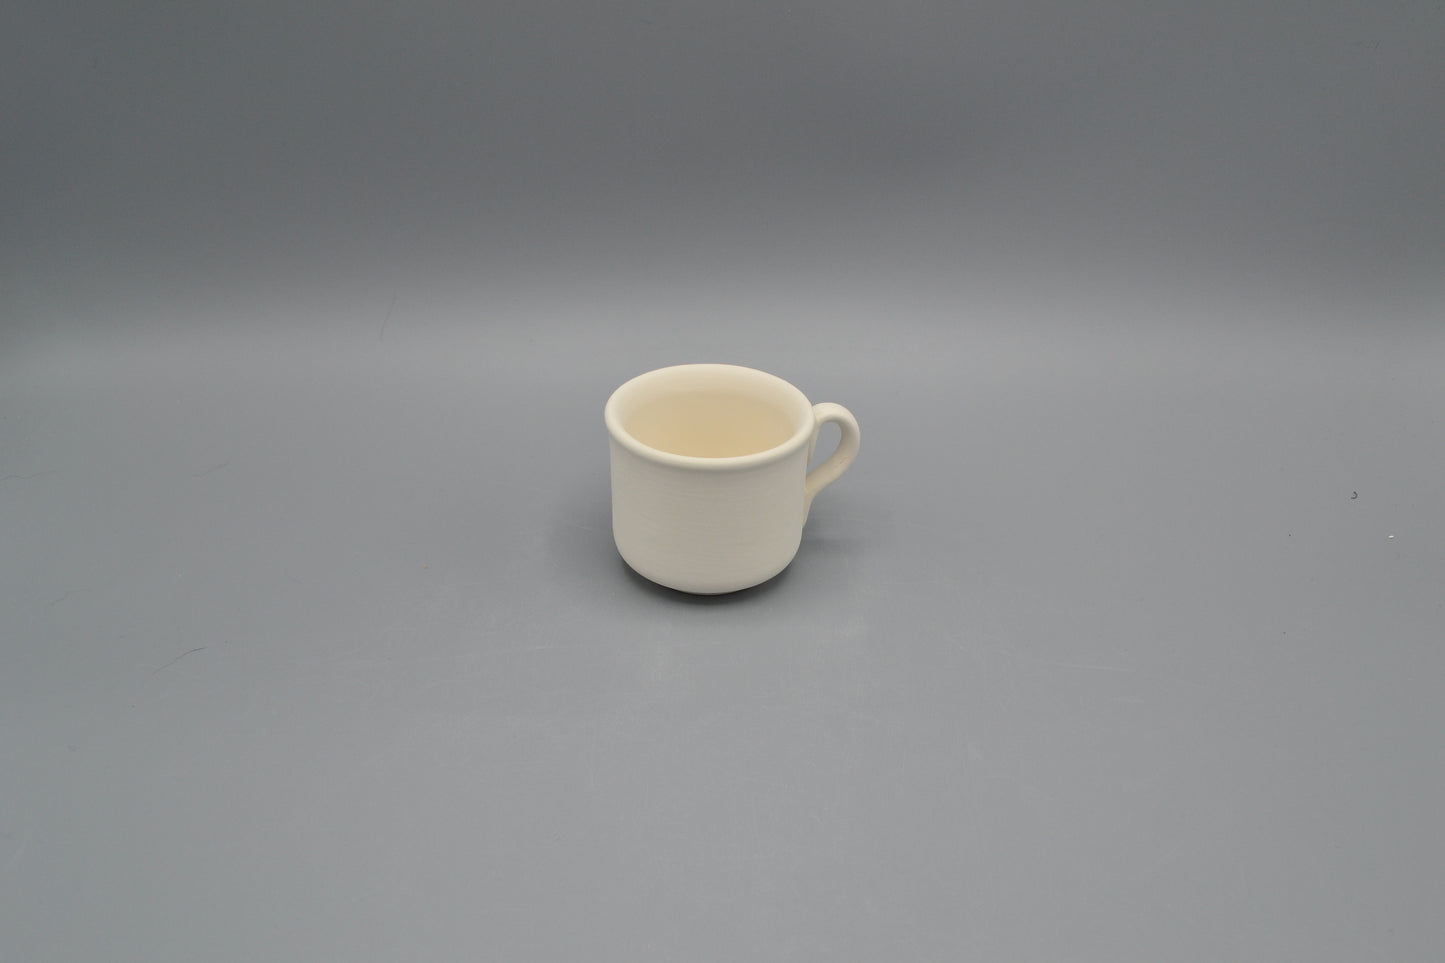 Tazza caffè Cilindrica in ceramica semilavorata GREZZA da dipingere